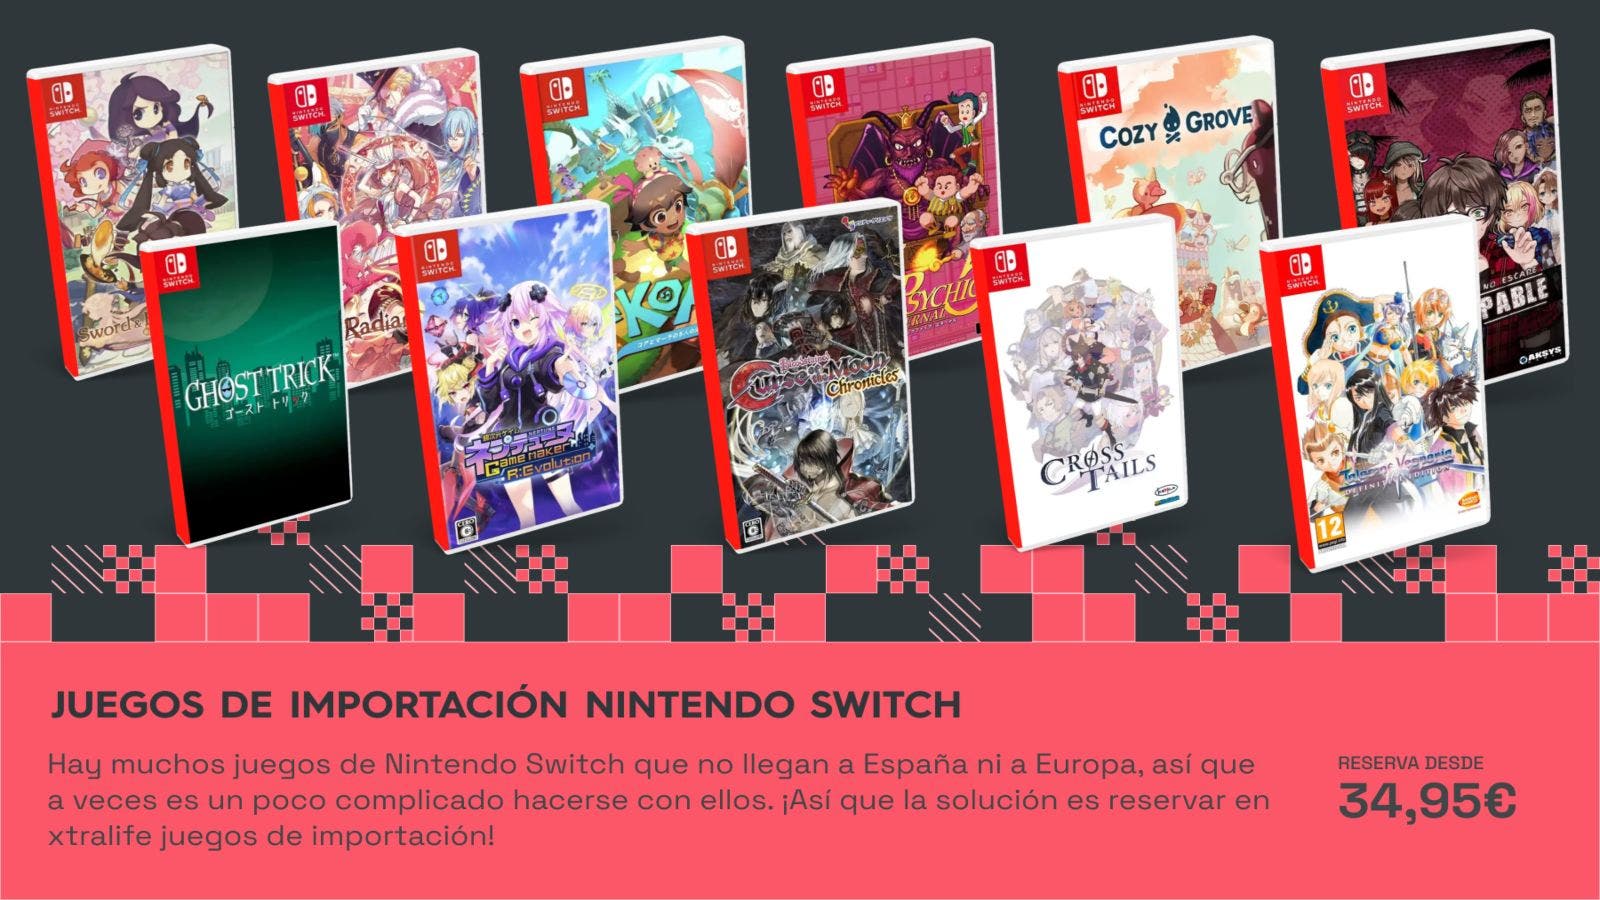 Conseguir nuevos juegos de importación para Nintendo Switch es posible con las nuevas reservas de xtralife